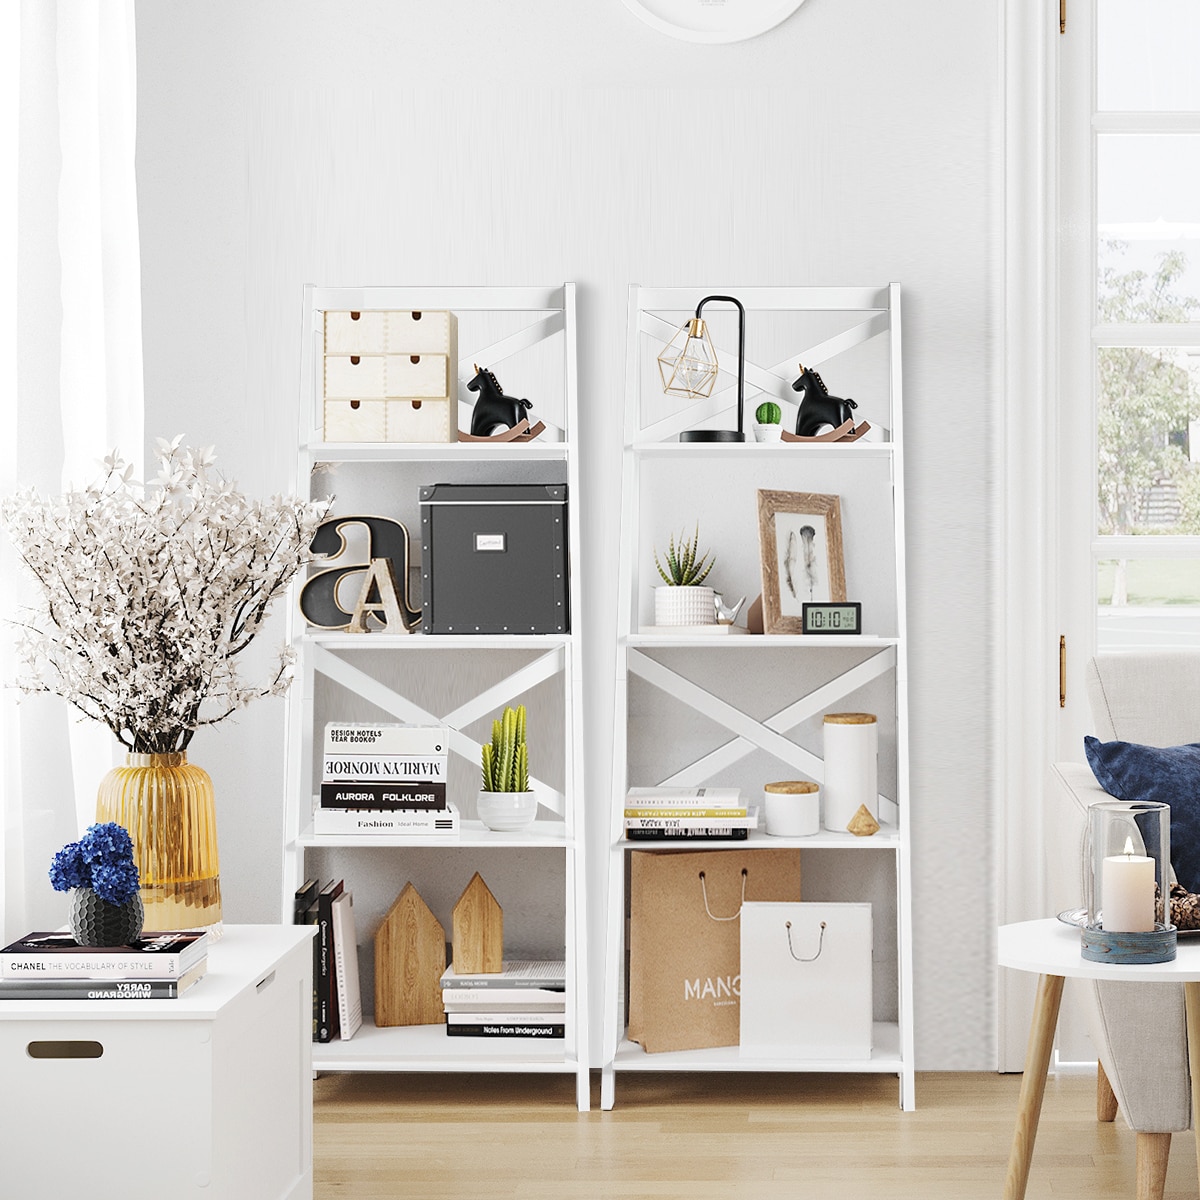 4-shelf With Storage Cabinet Light Oak Finish Bookcase - 73